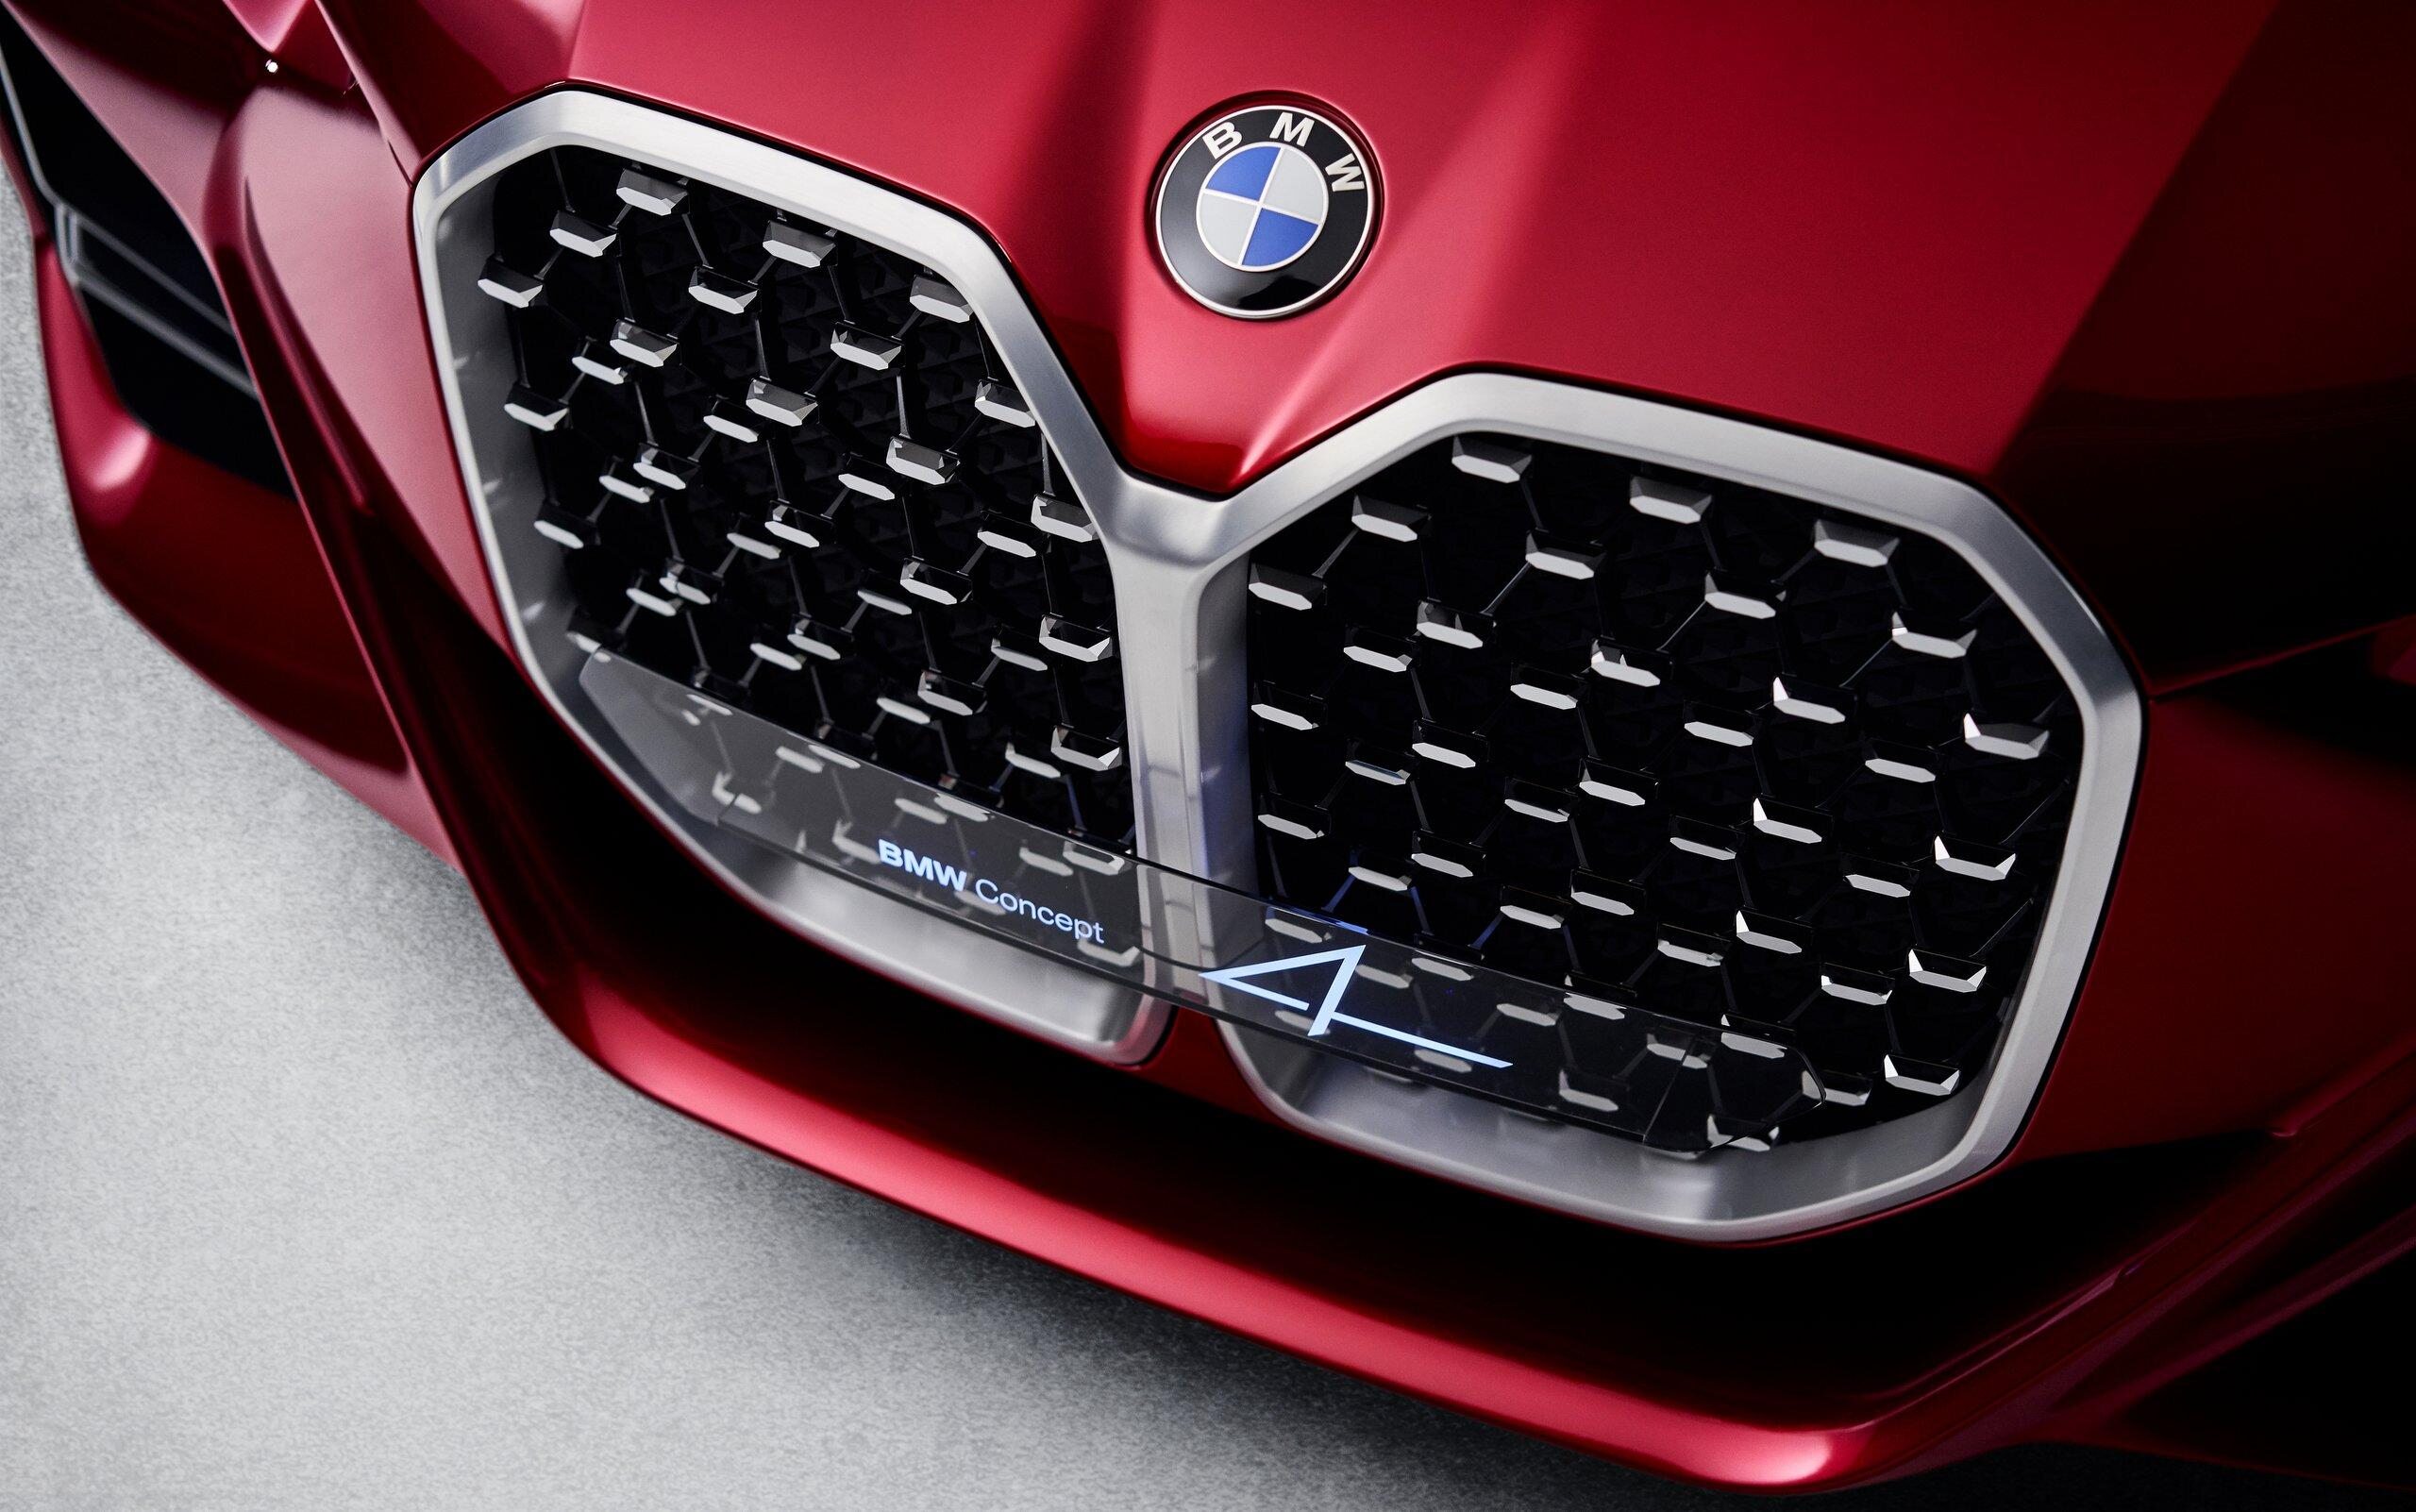 BMW oznacza Bayerische Motoren Werke. Czy Bayerische to: